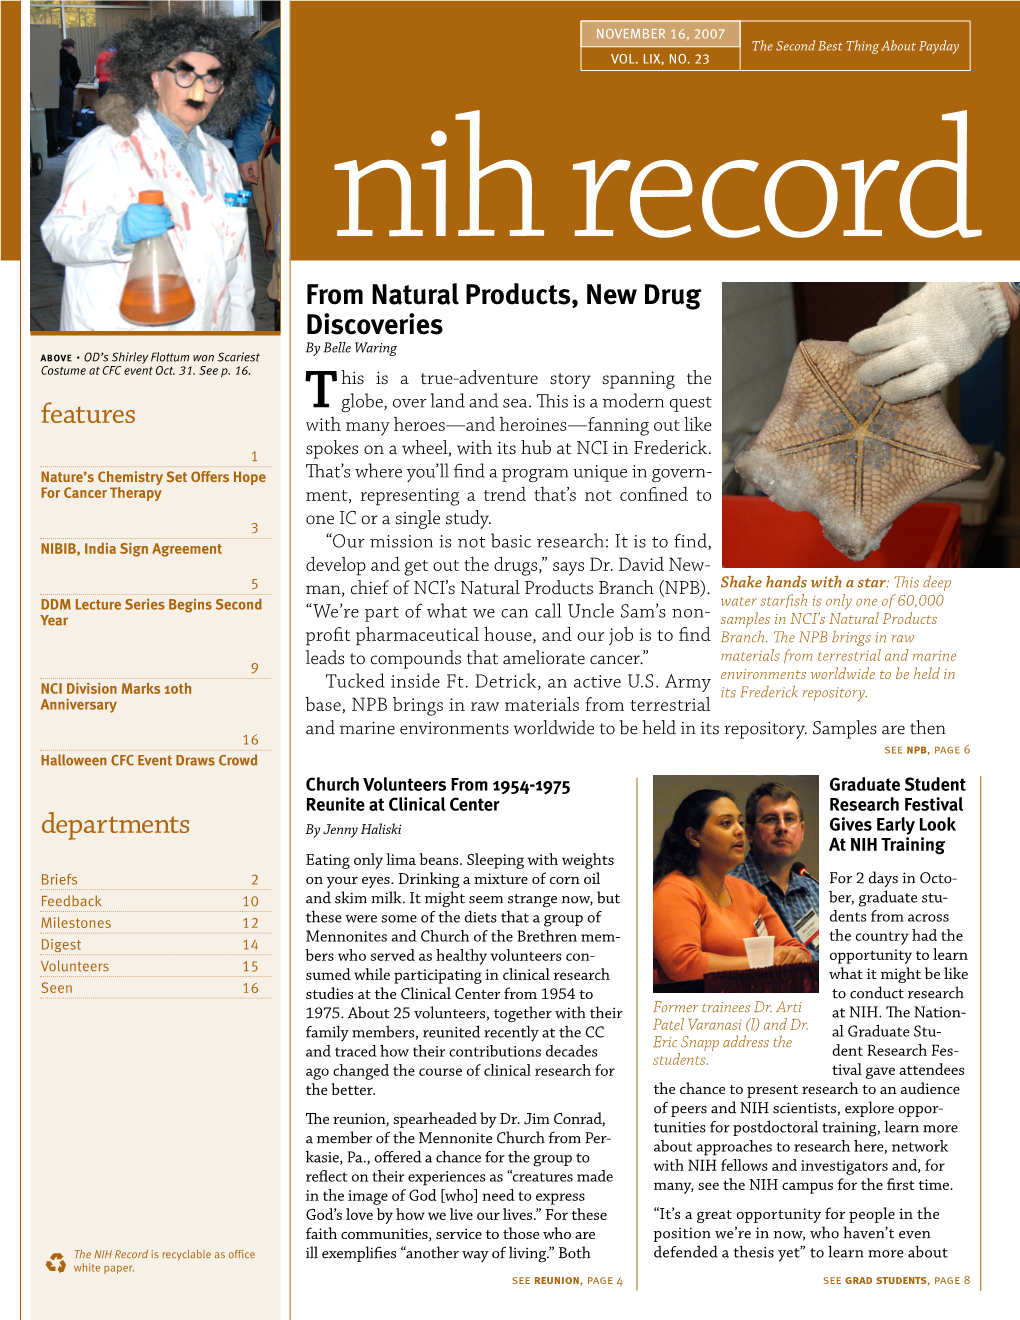 November 16, 2007, NIH Record, Vol. LIX, No. 23